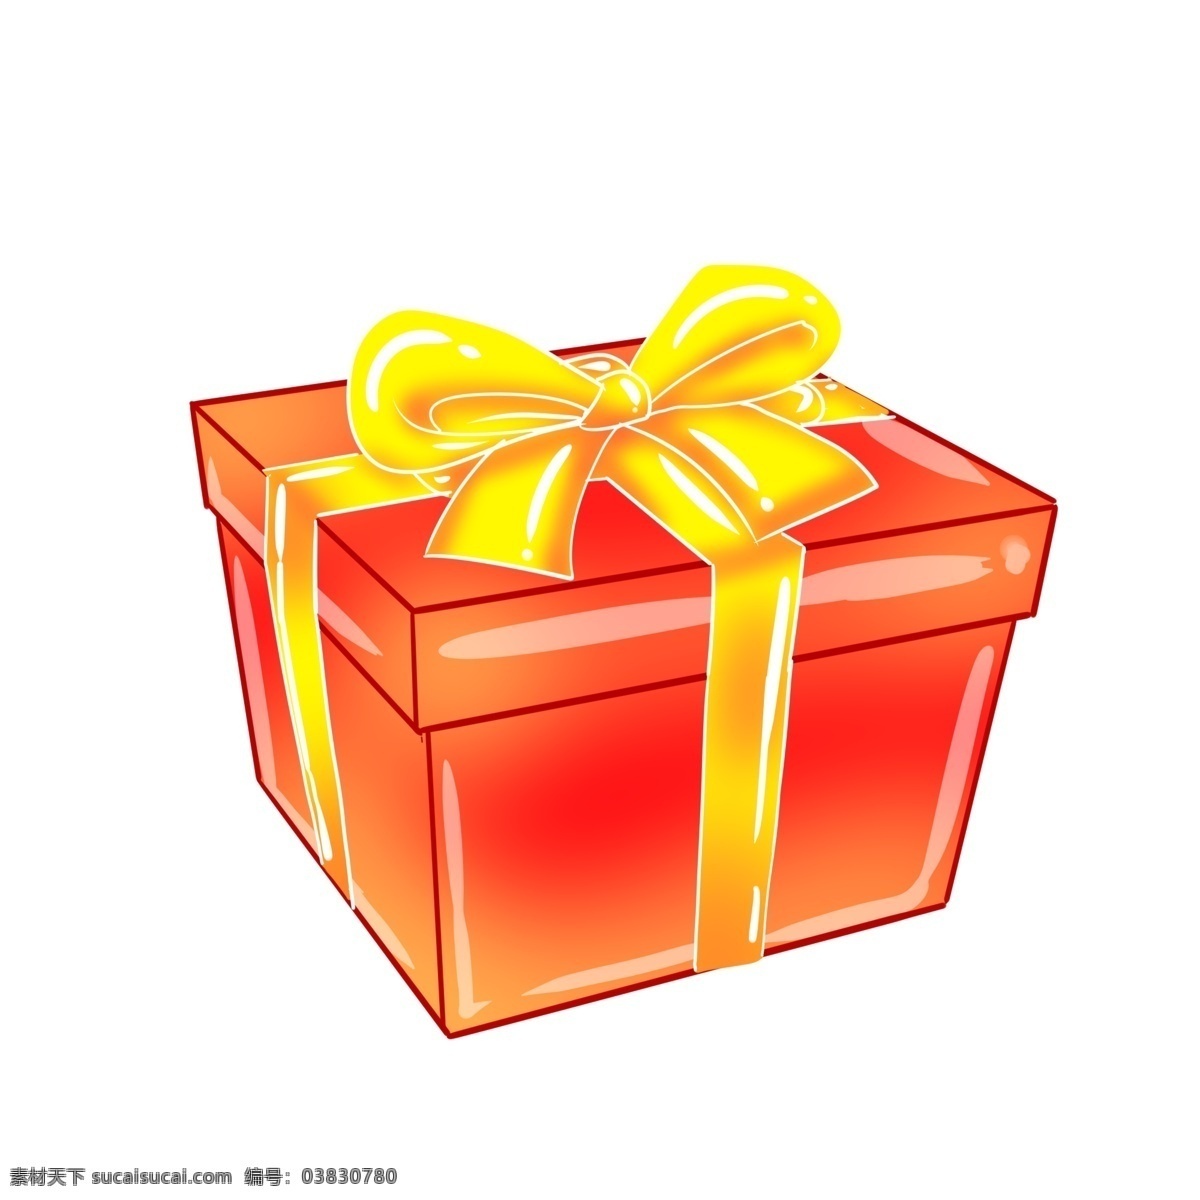 大红色 精美 方形 礼盒 礼品礼盒 系了彩带 精美的结 红色 暖色 送人礼物 包装 装饰 方形礼盒 大蝴蝶结